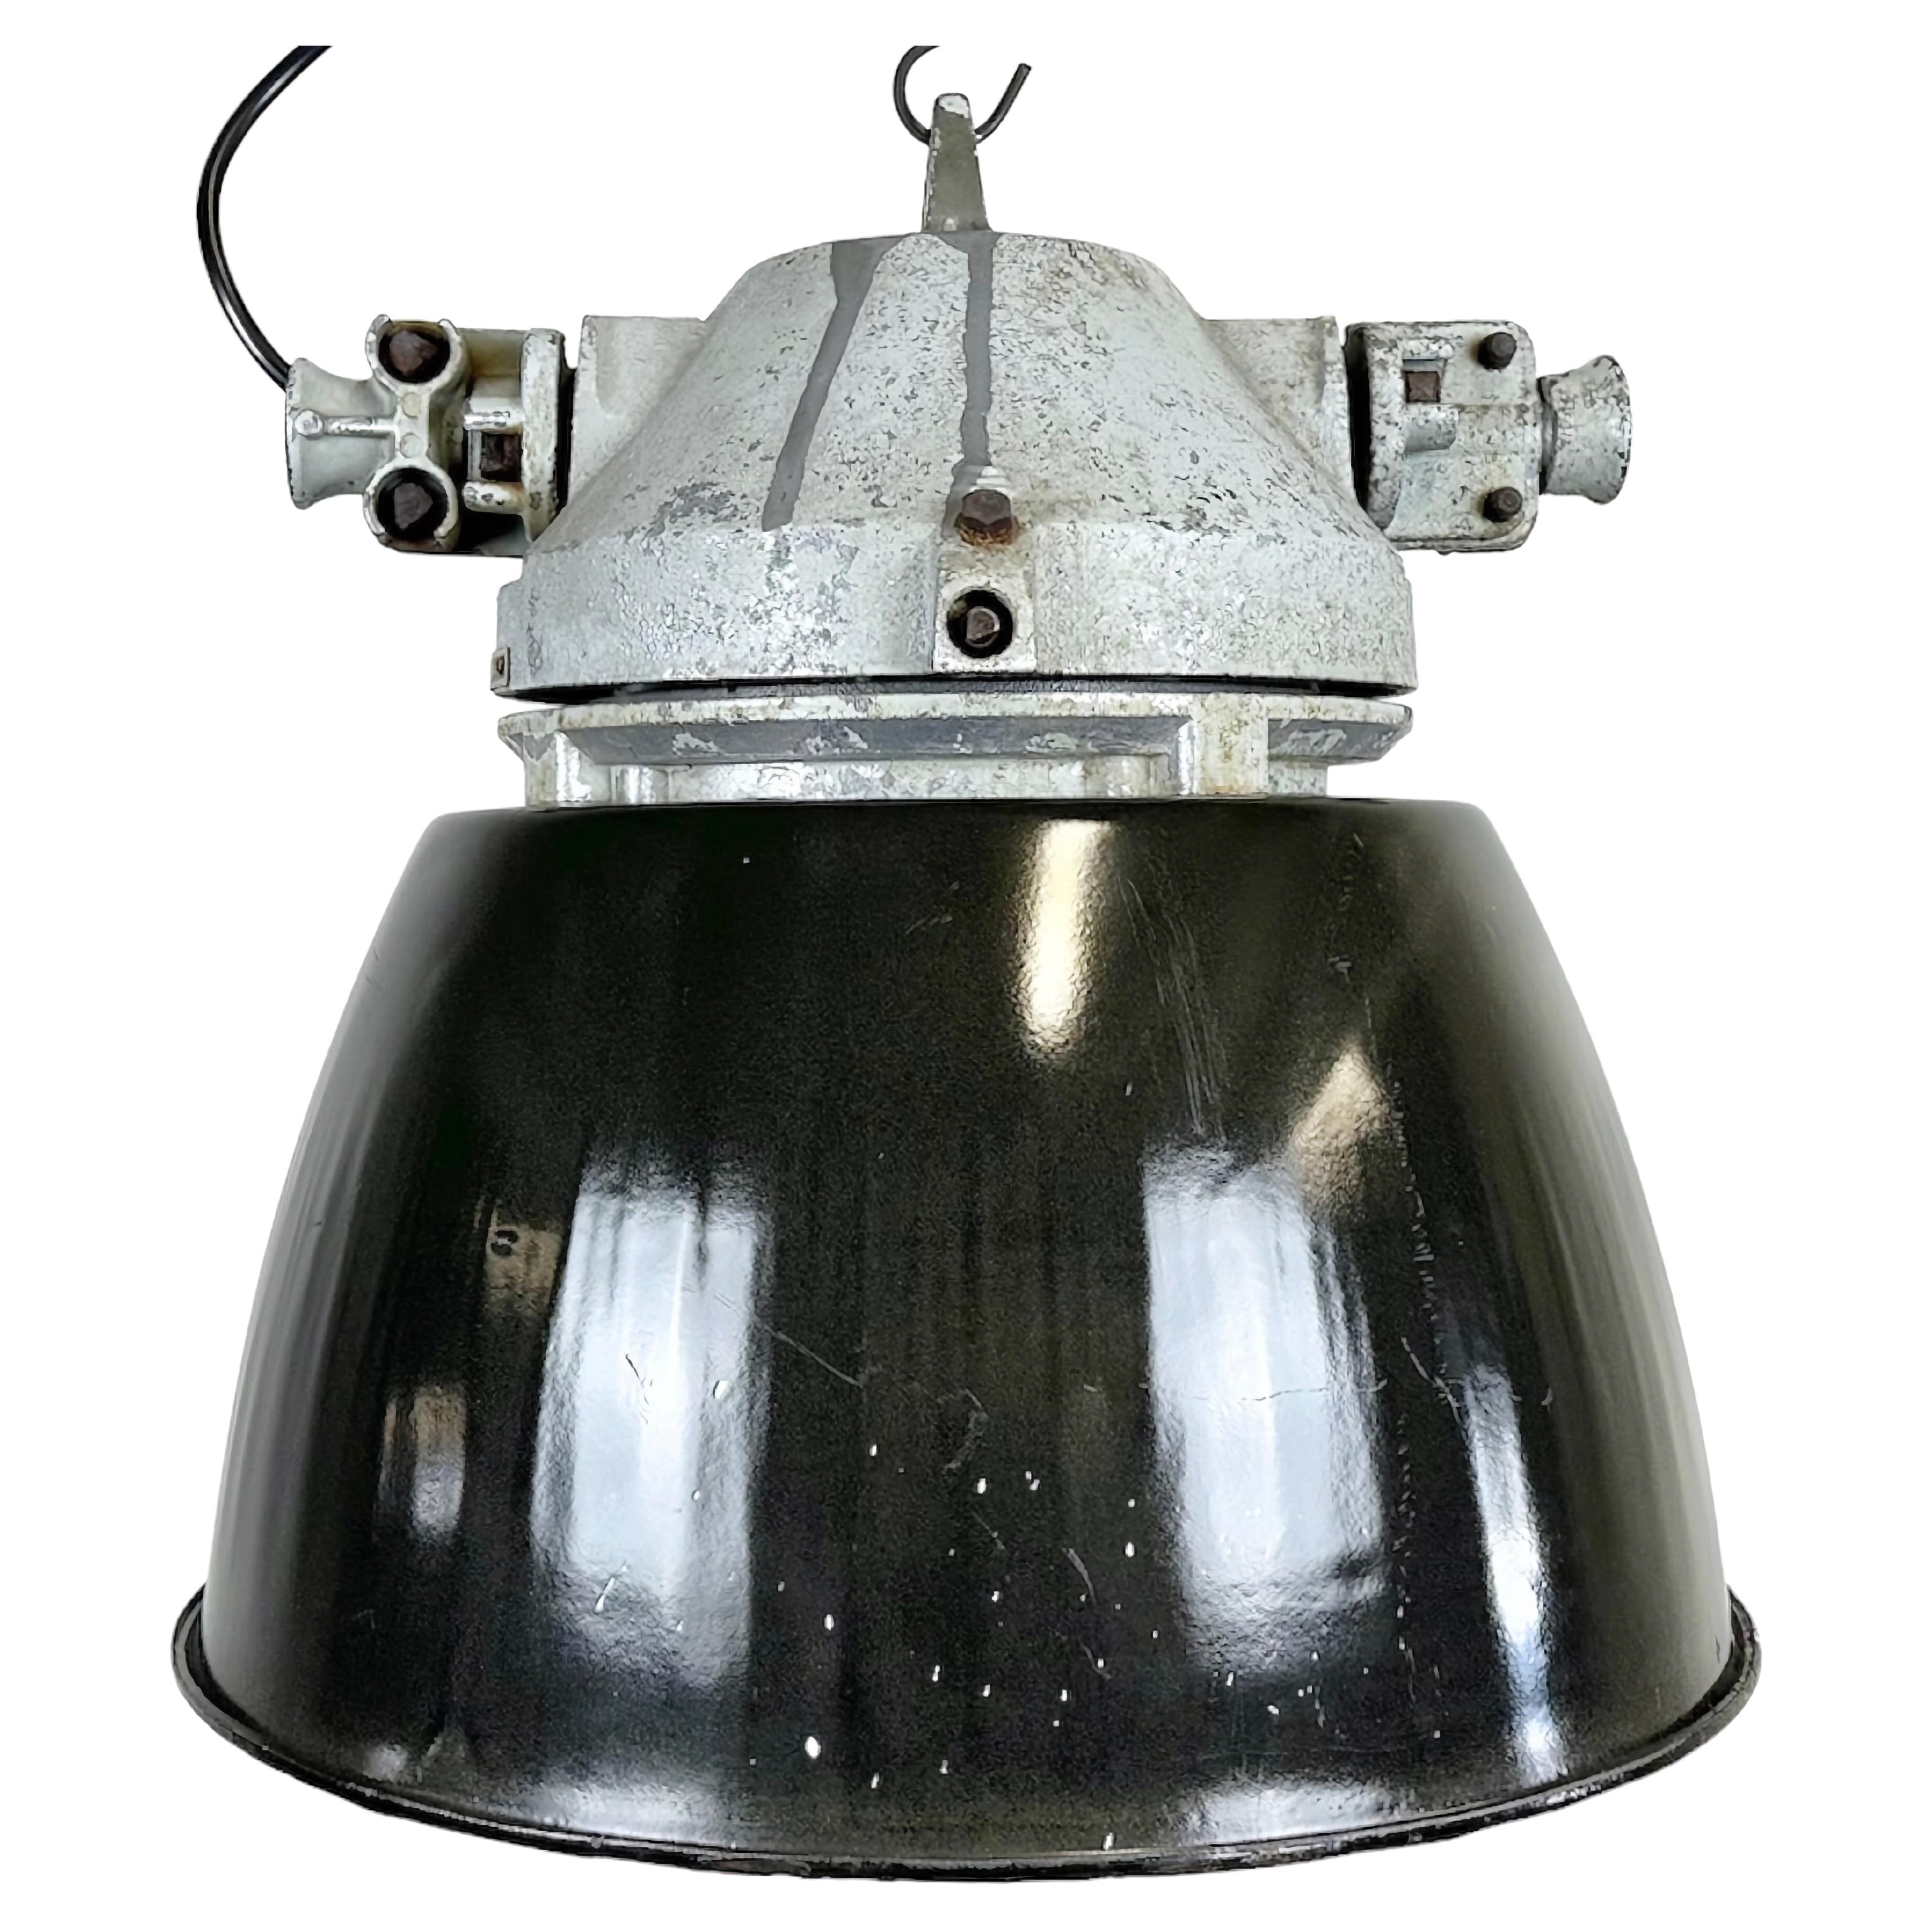 Lampe de présentation industrielle grise explosion avec abat-jour émaillé noir, années 1970